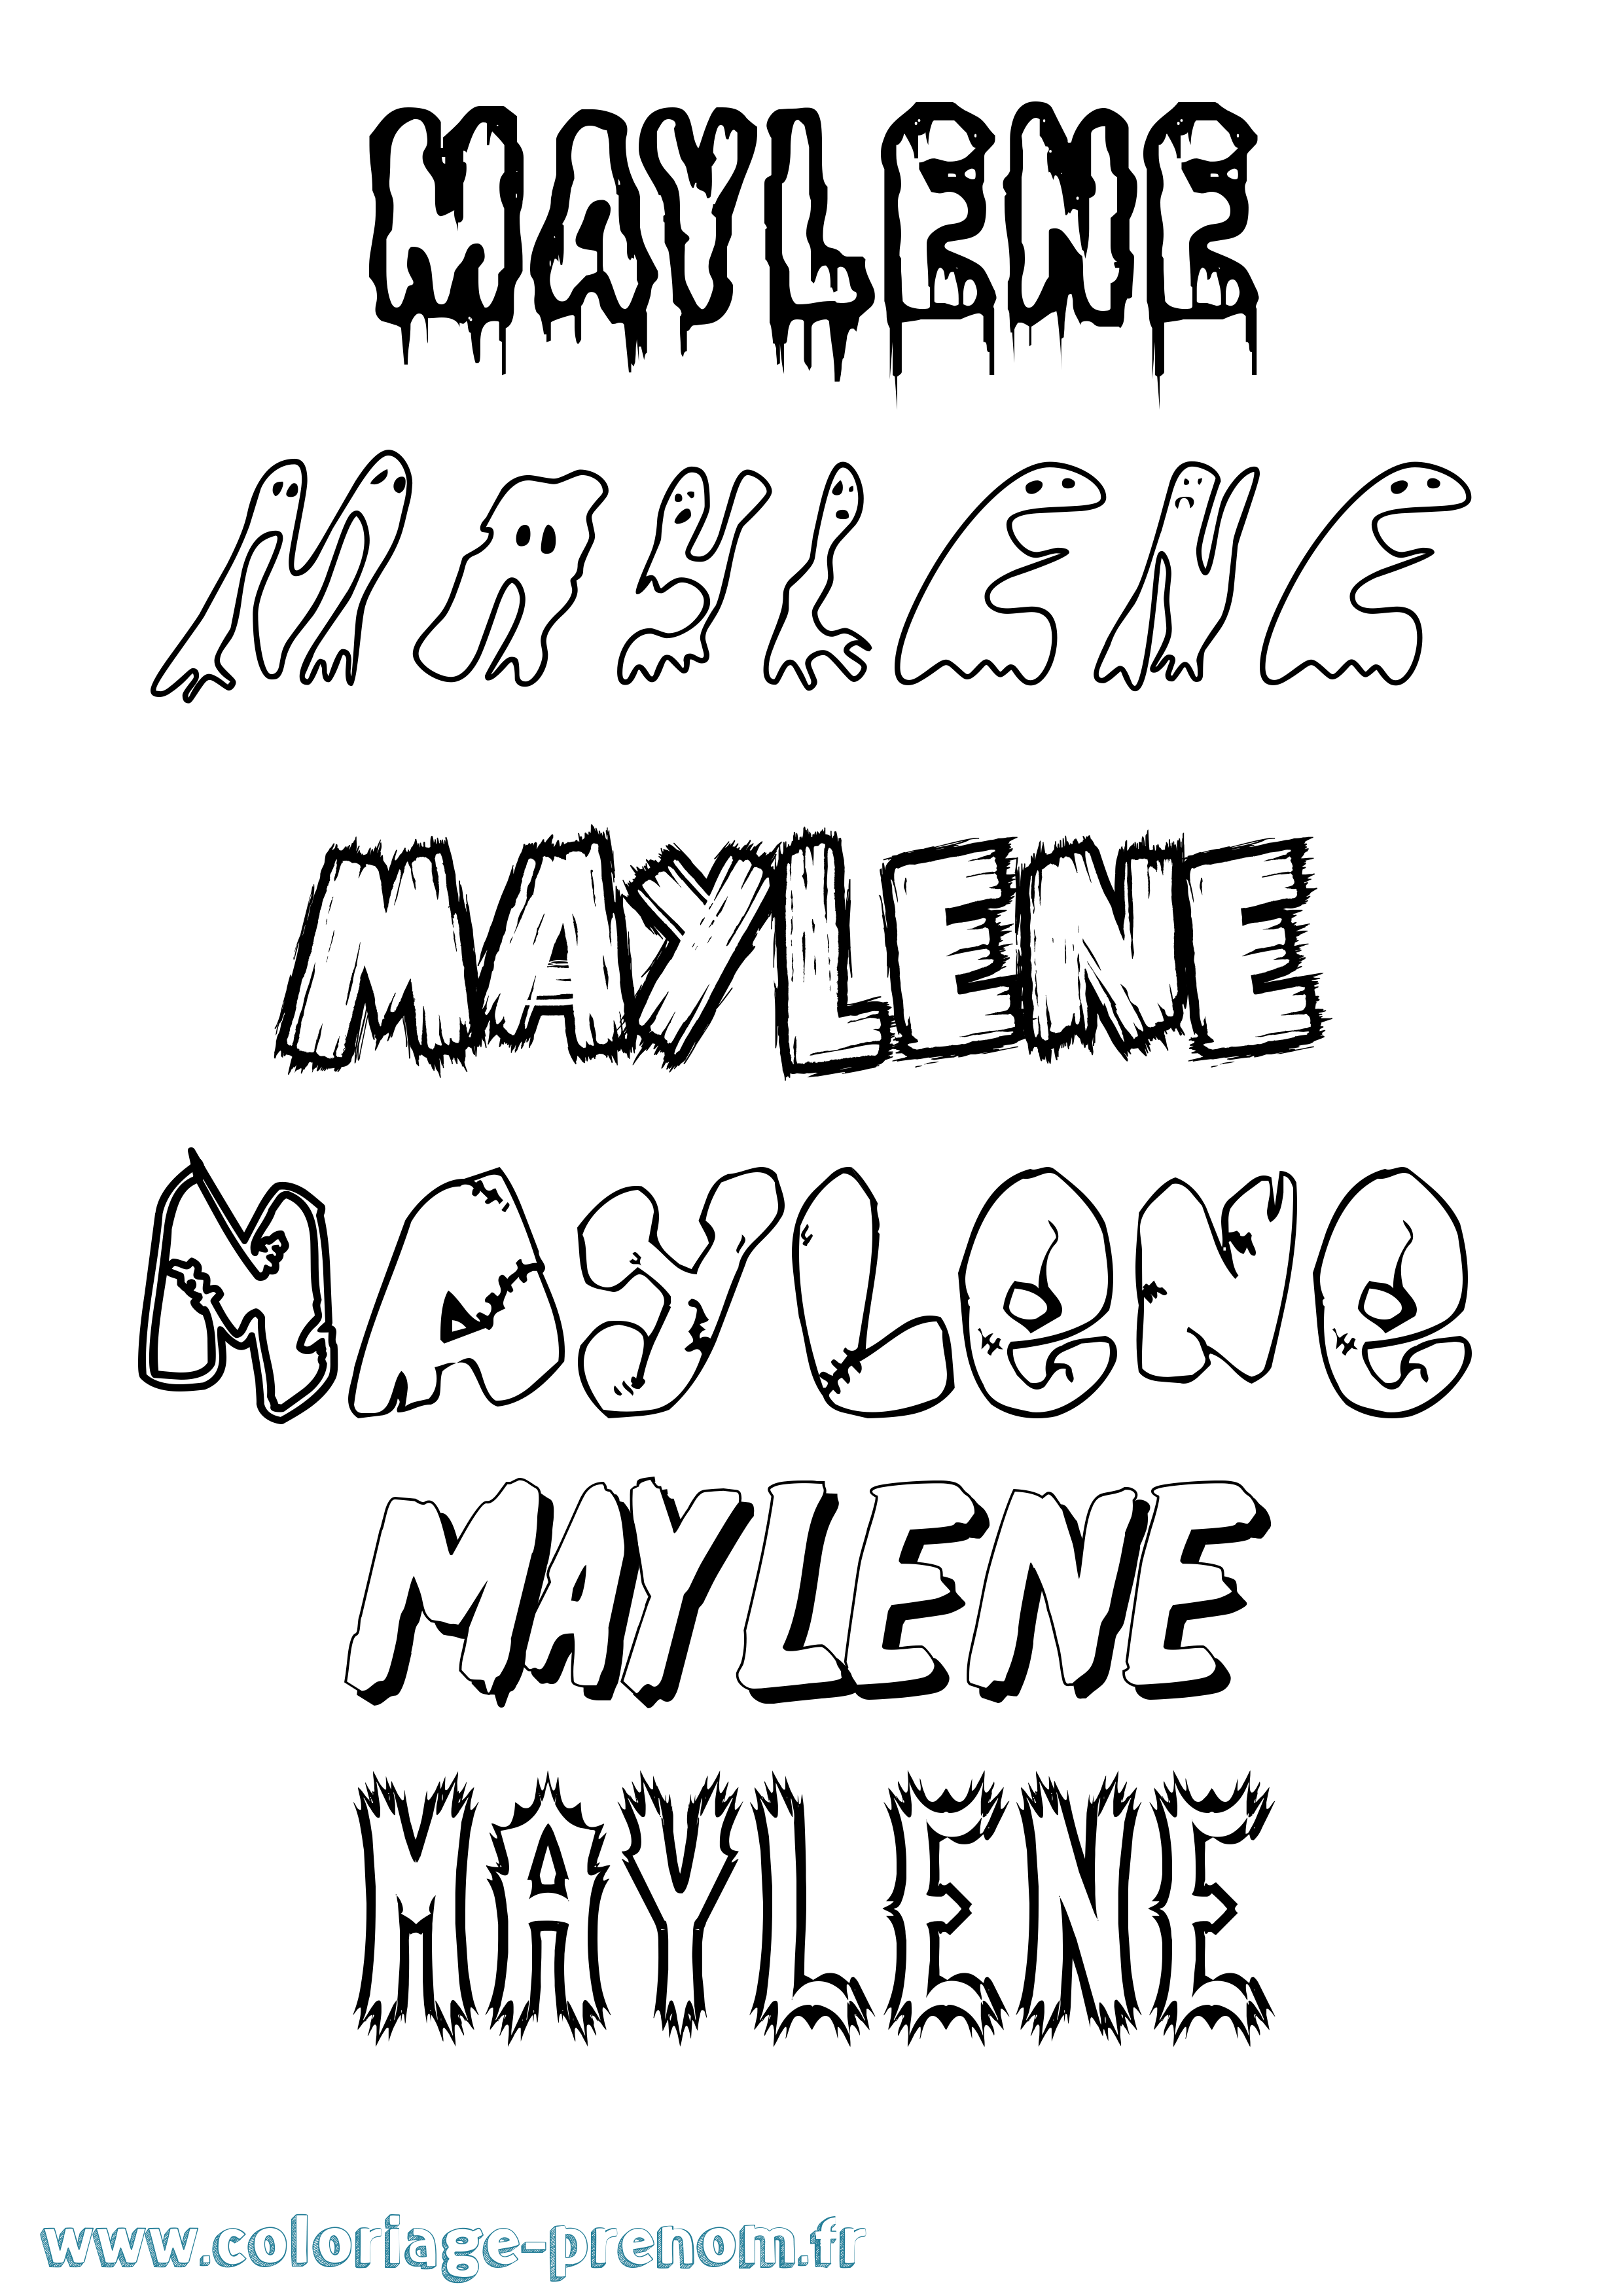 Coloriage prénom Maylene Frisson